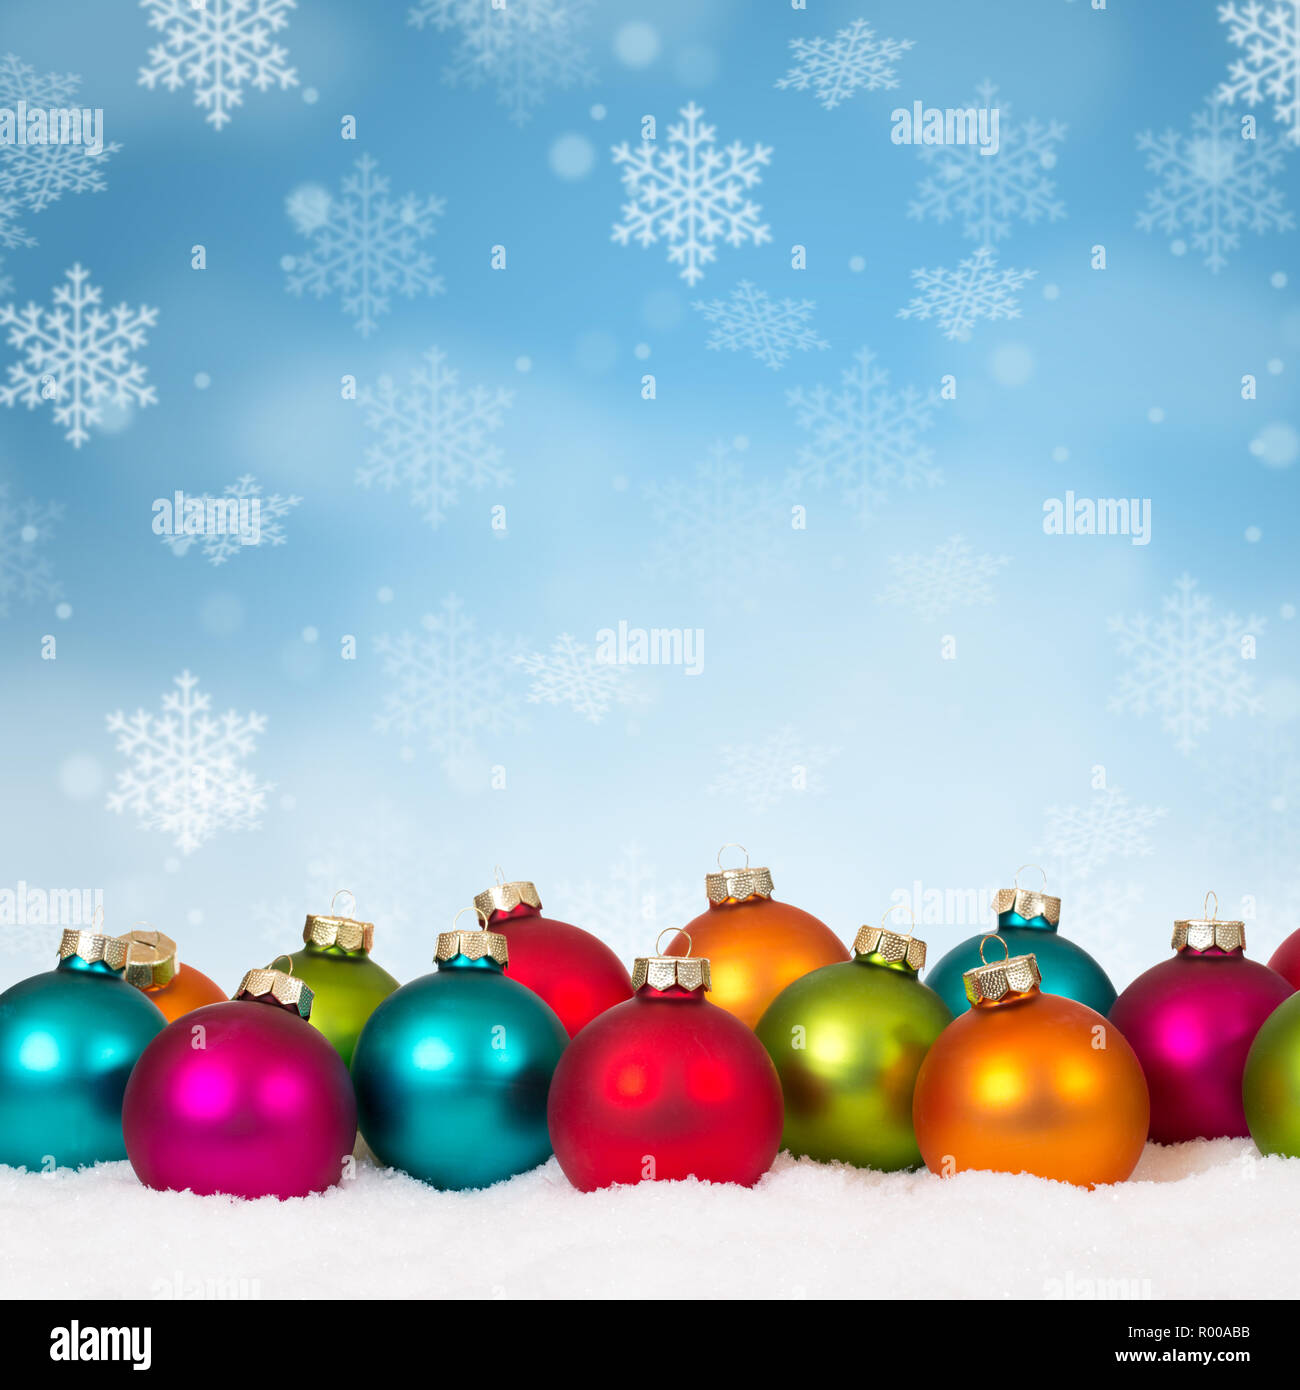 Sfondi Natalizi Con Neve.Molte Colorate Palle Di Natale Sfondo Baubles Decorazione Square Fiocchi Di Neve Copyspace Di Inverno Foto Stock Alamy